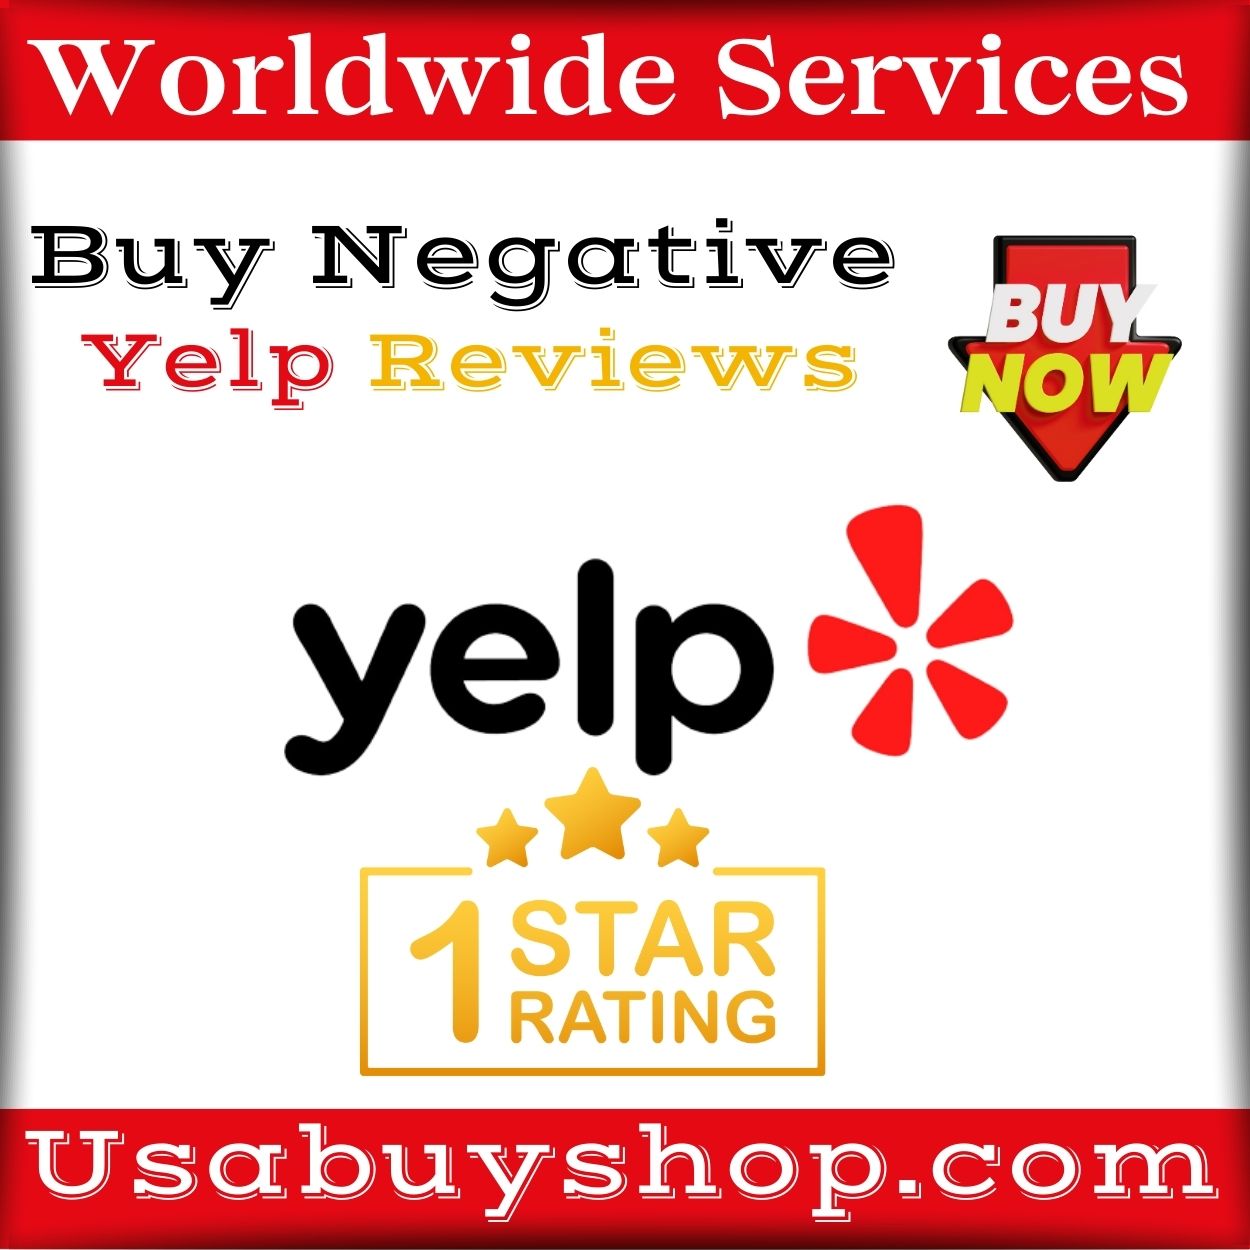 Buy Negative Yelp Reviews | Buy 1-star Rating Reviews